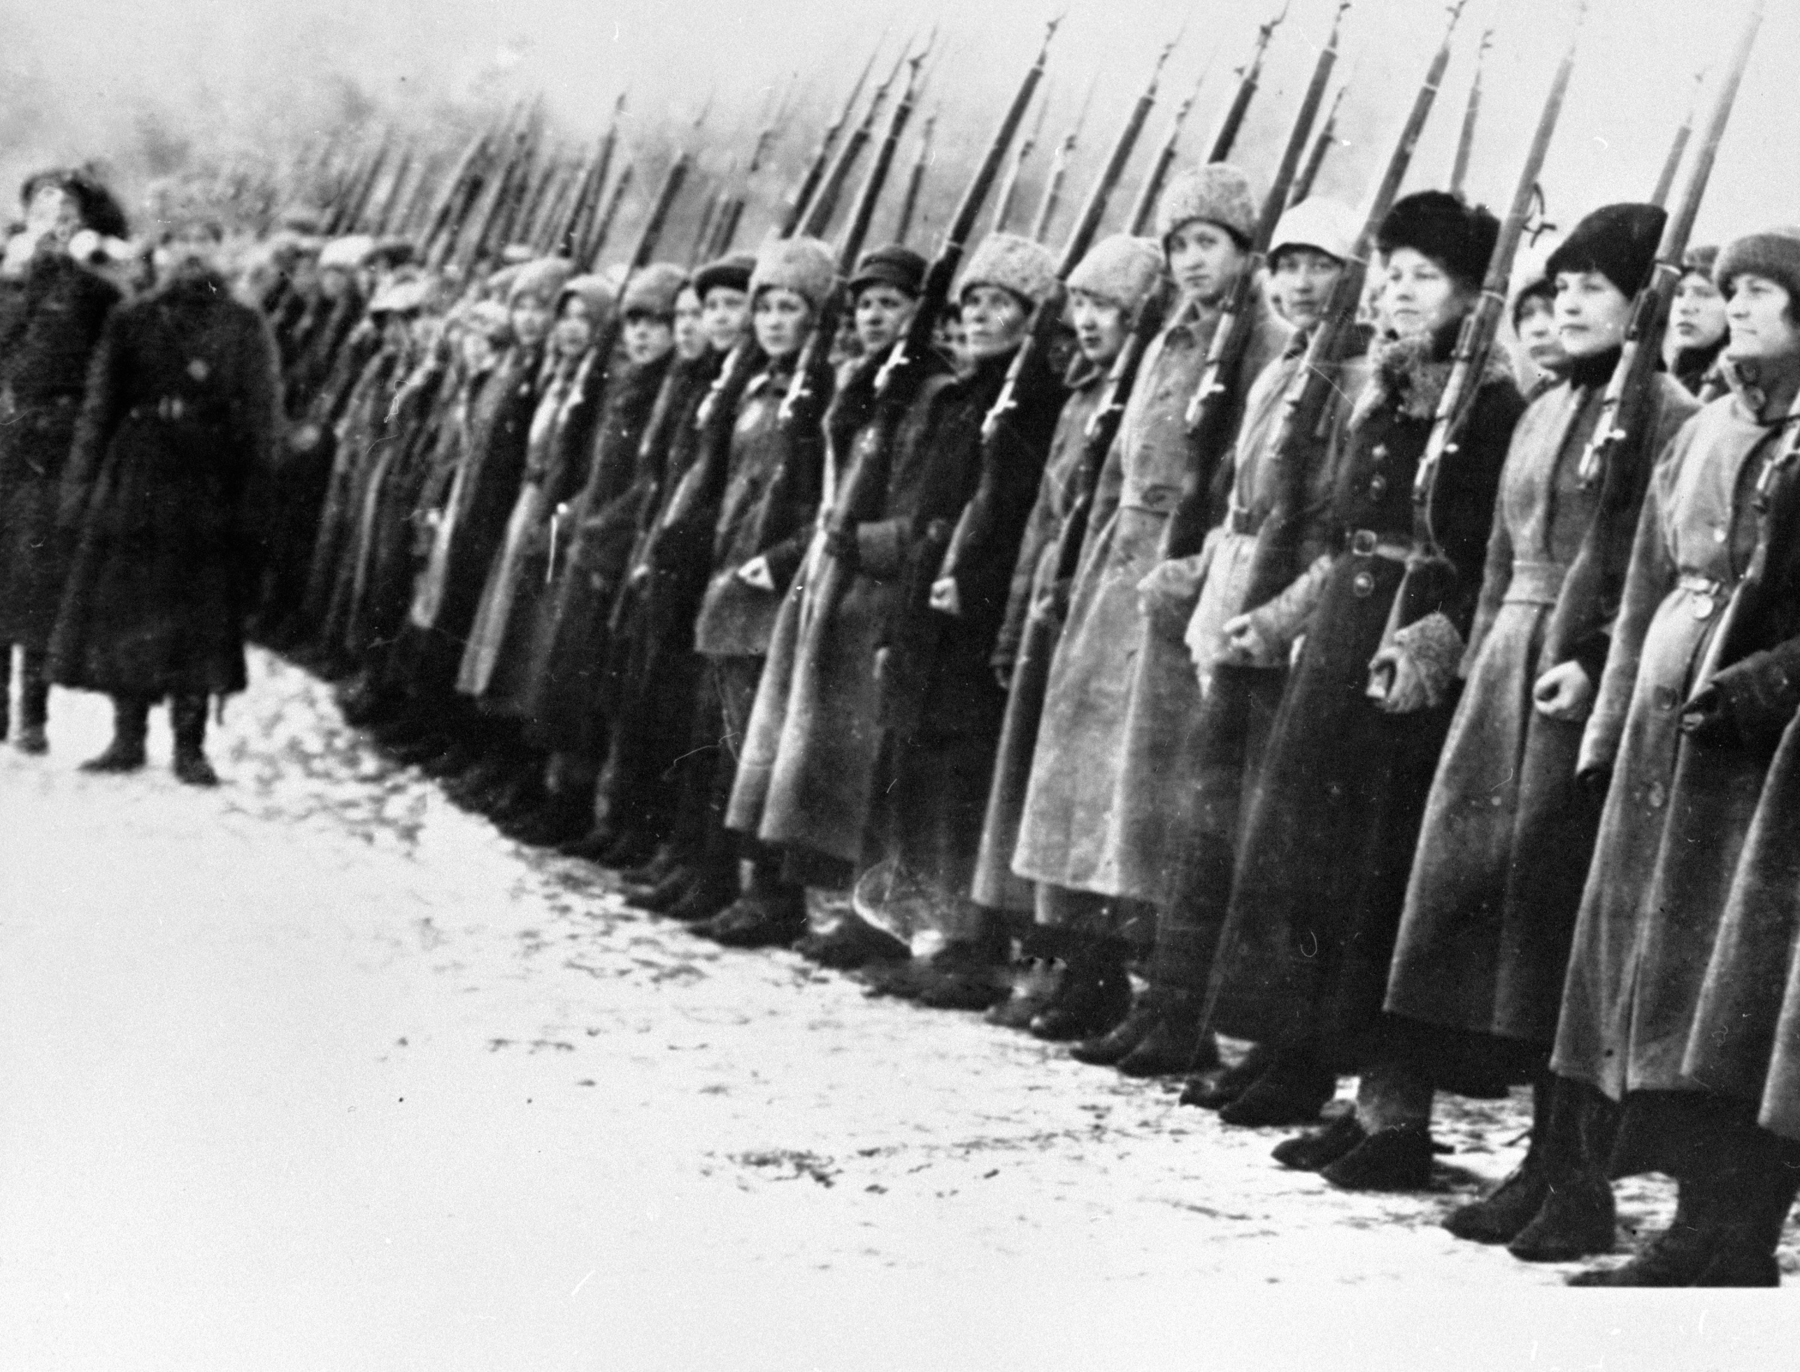 Fotografia em preto e branco. Mulheres de sobretudo e gorro, perfiladas empunhando armas de fogo com cano longo.